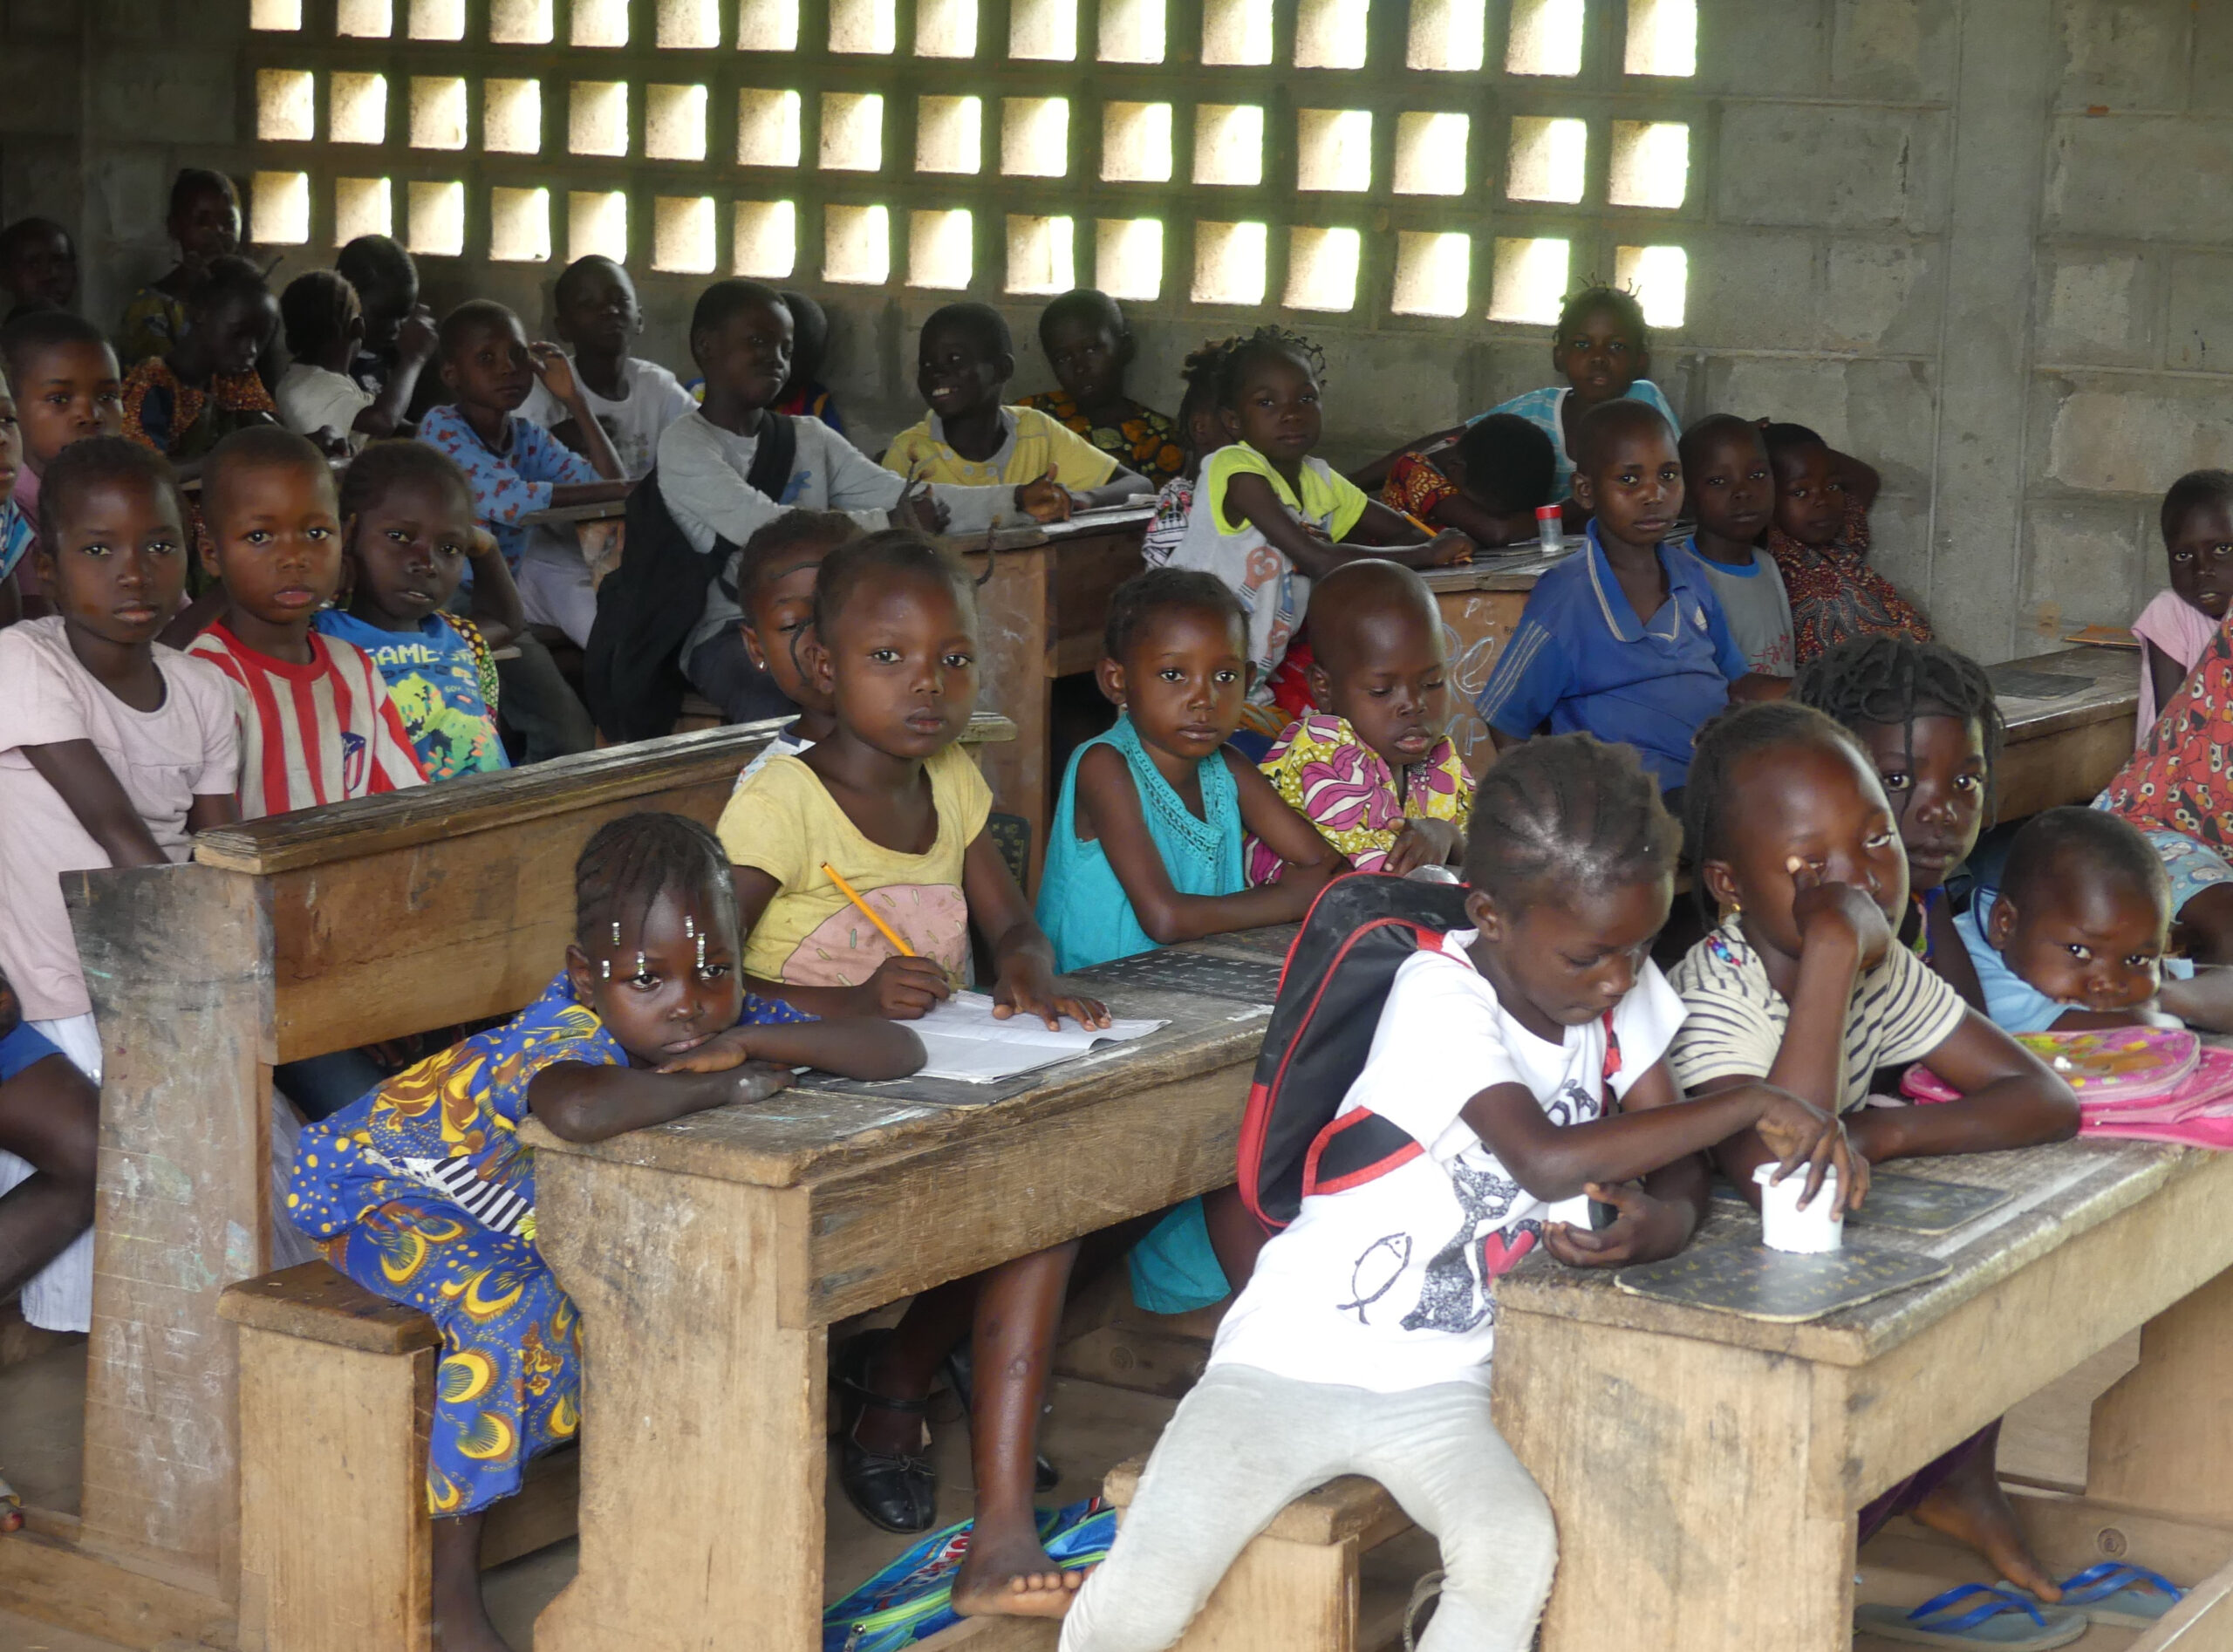 Centrafrique : plusieurs écoles fermées dans la région de Bozoum faute de stabilité sécuritaire et d’enseignants qualifiés